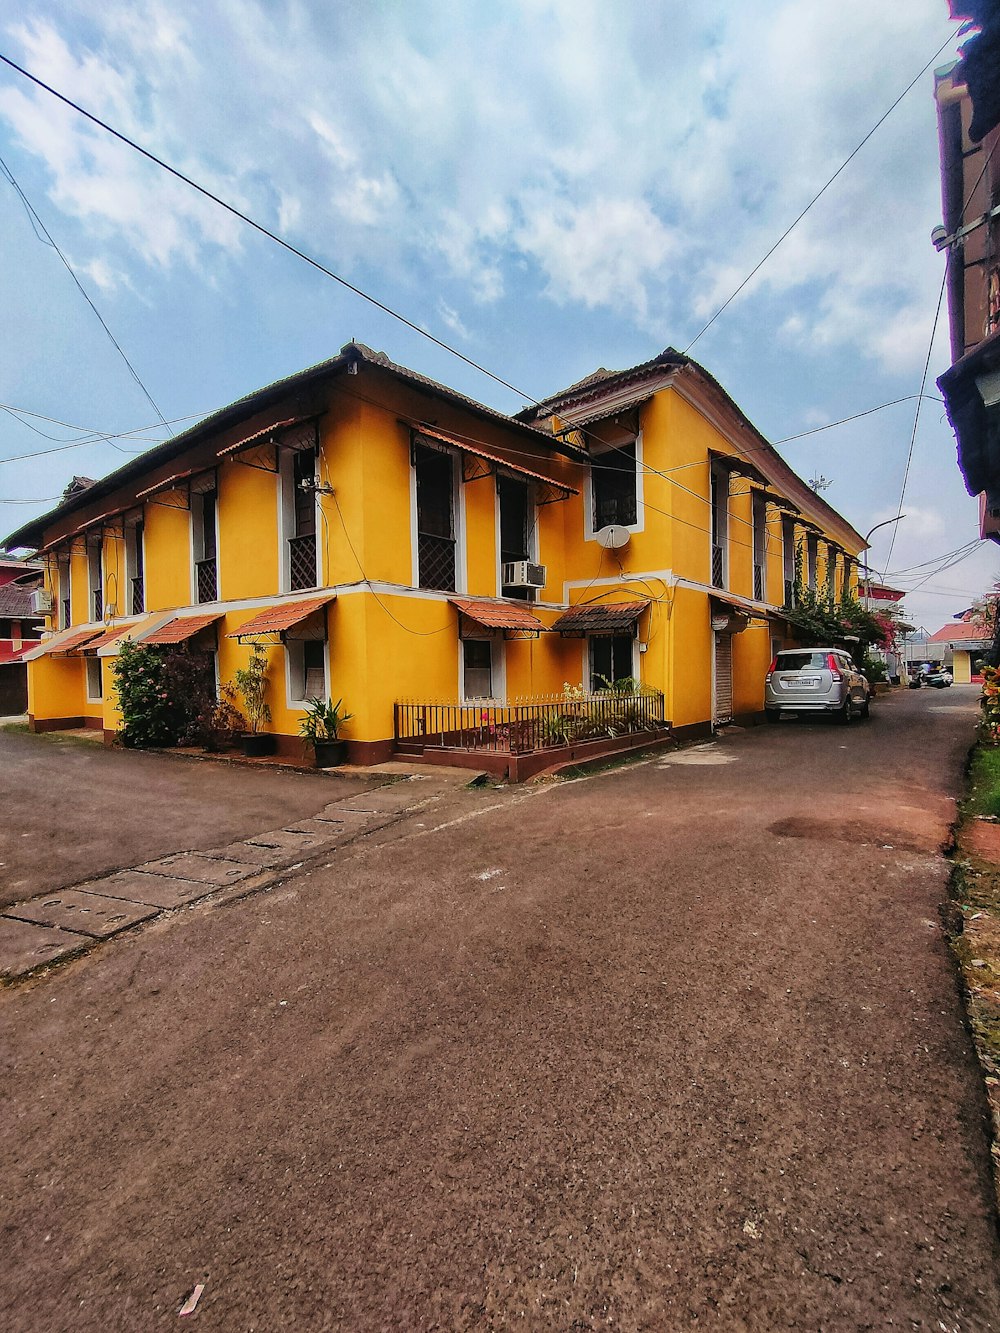 Un edificio giallo seduto sul lato di una strada